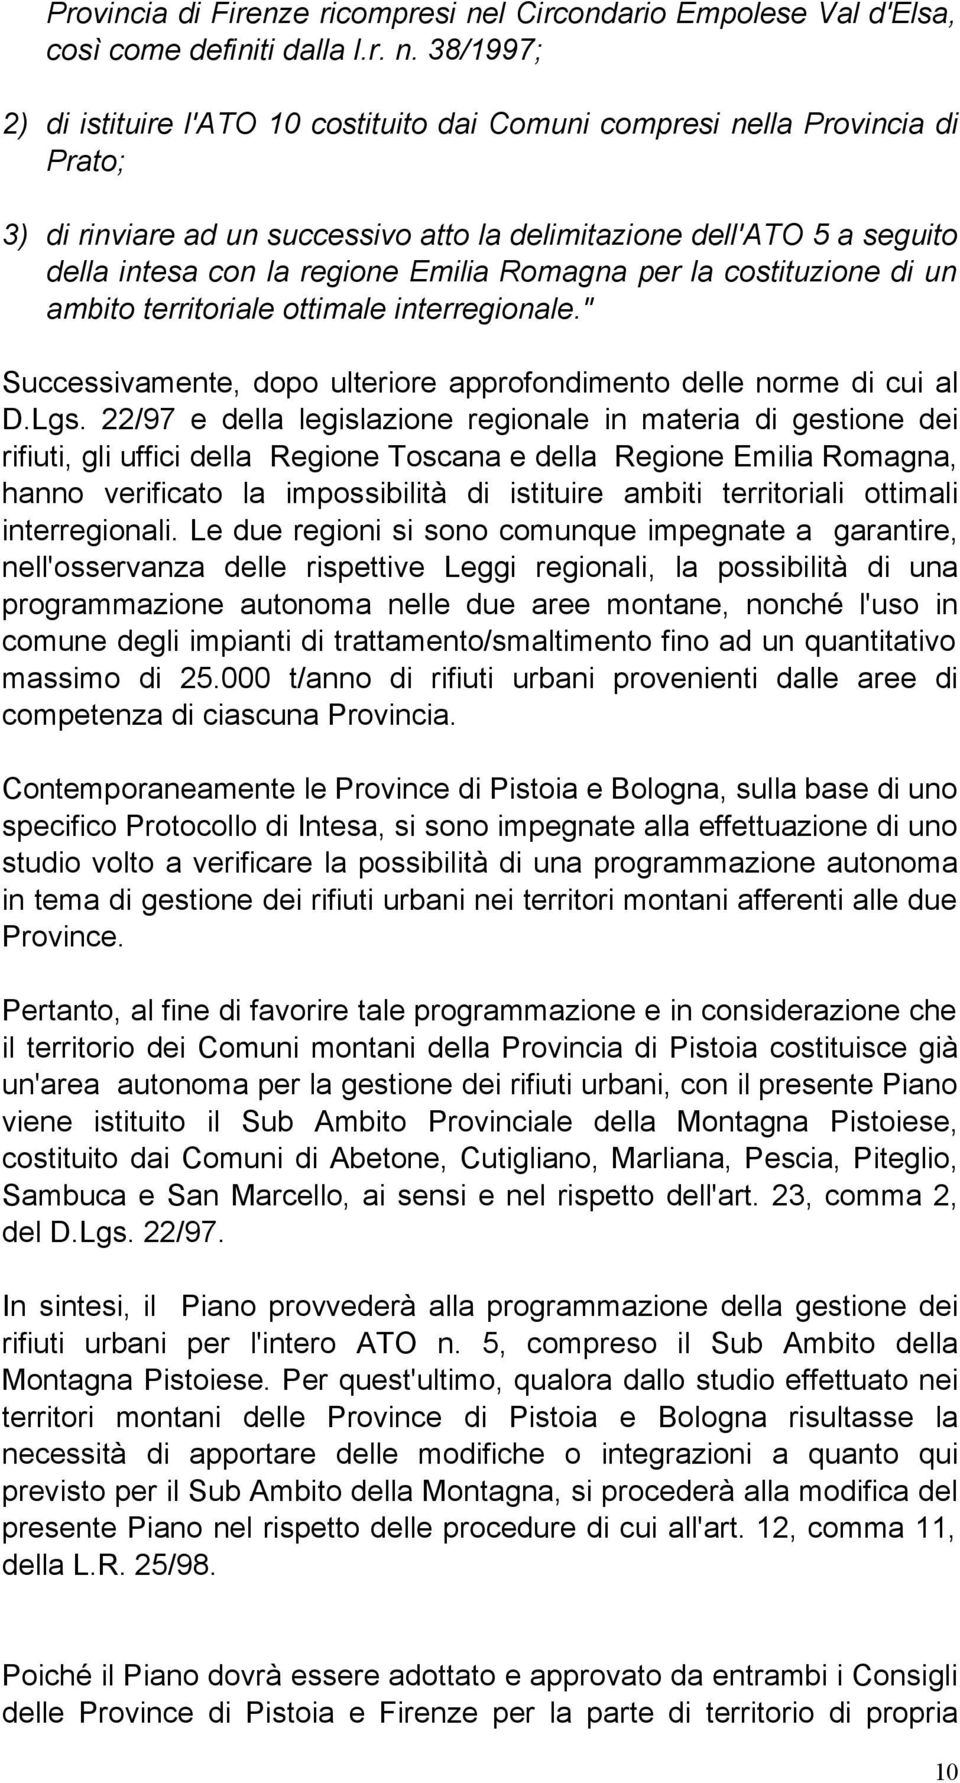 38/1997; 2) di istituire l'ato 10 costituito dai Comuni compresi nella Provincia di Prato; 3) di rinviare ad un successivo atto la delimitazione dell'ato 5 a seguito della intesa con la regione